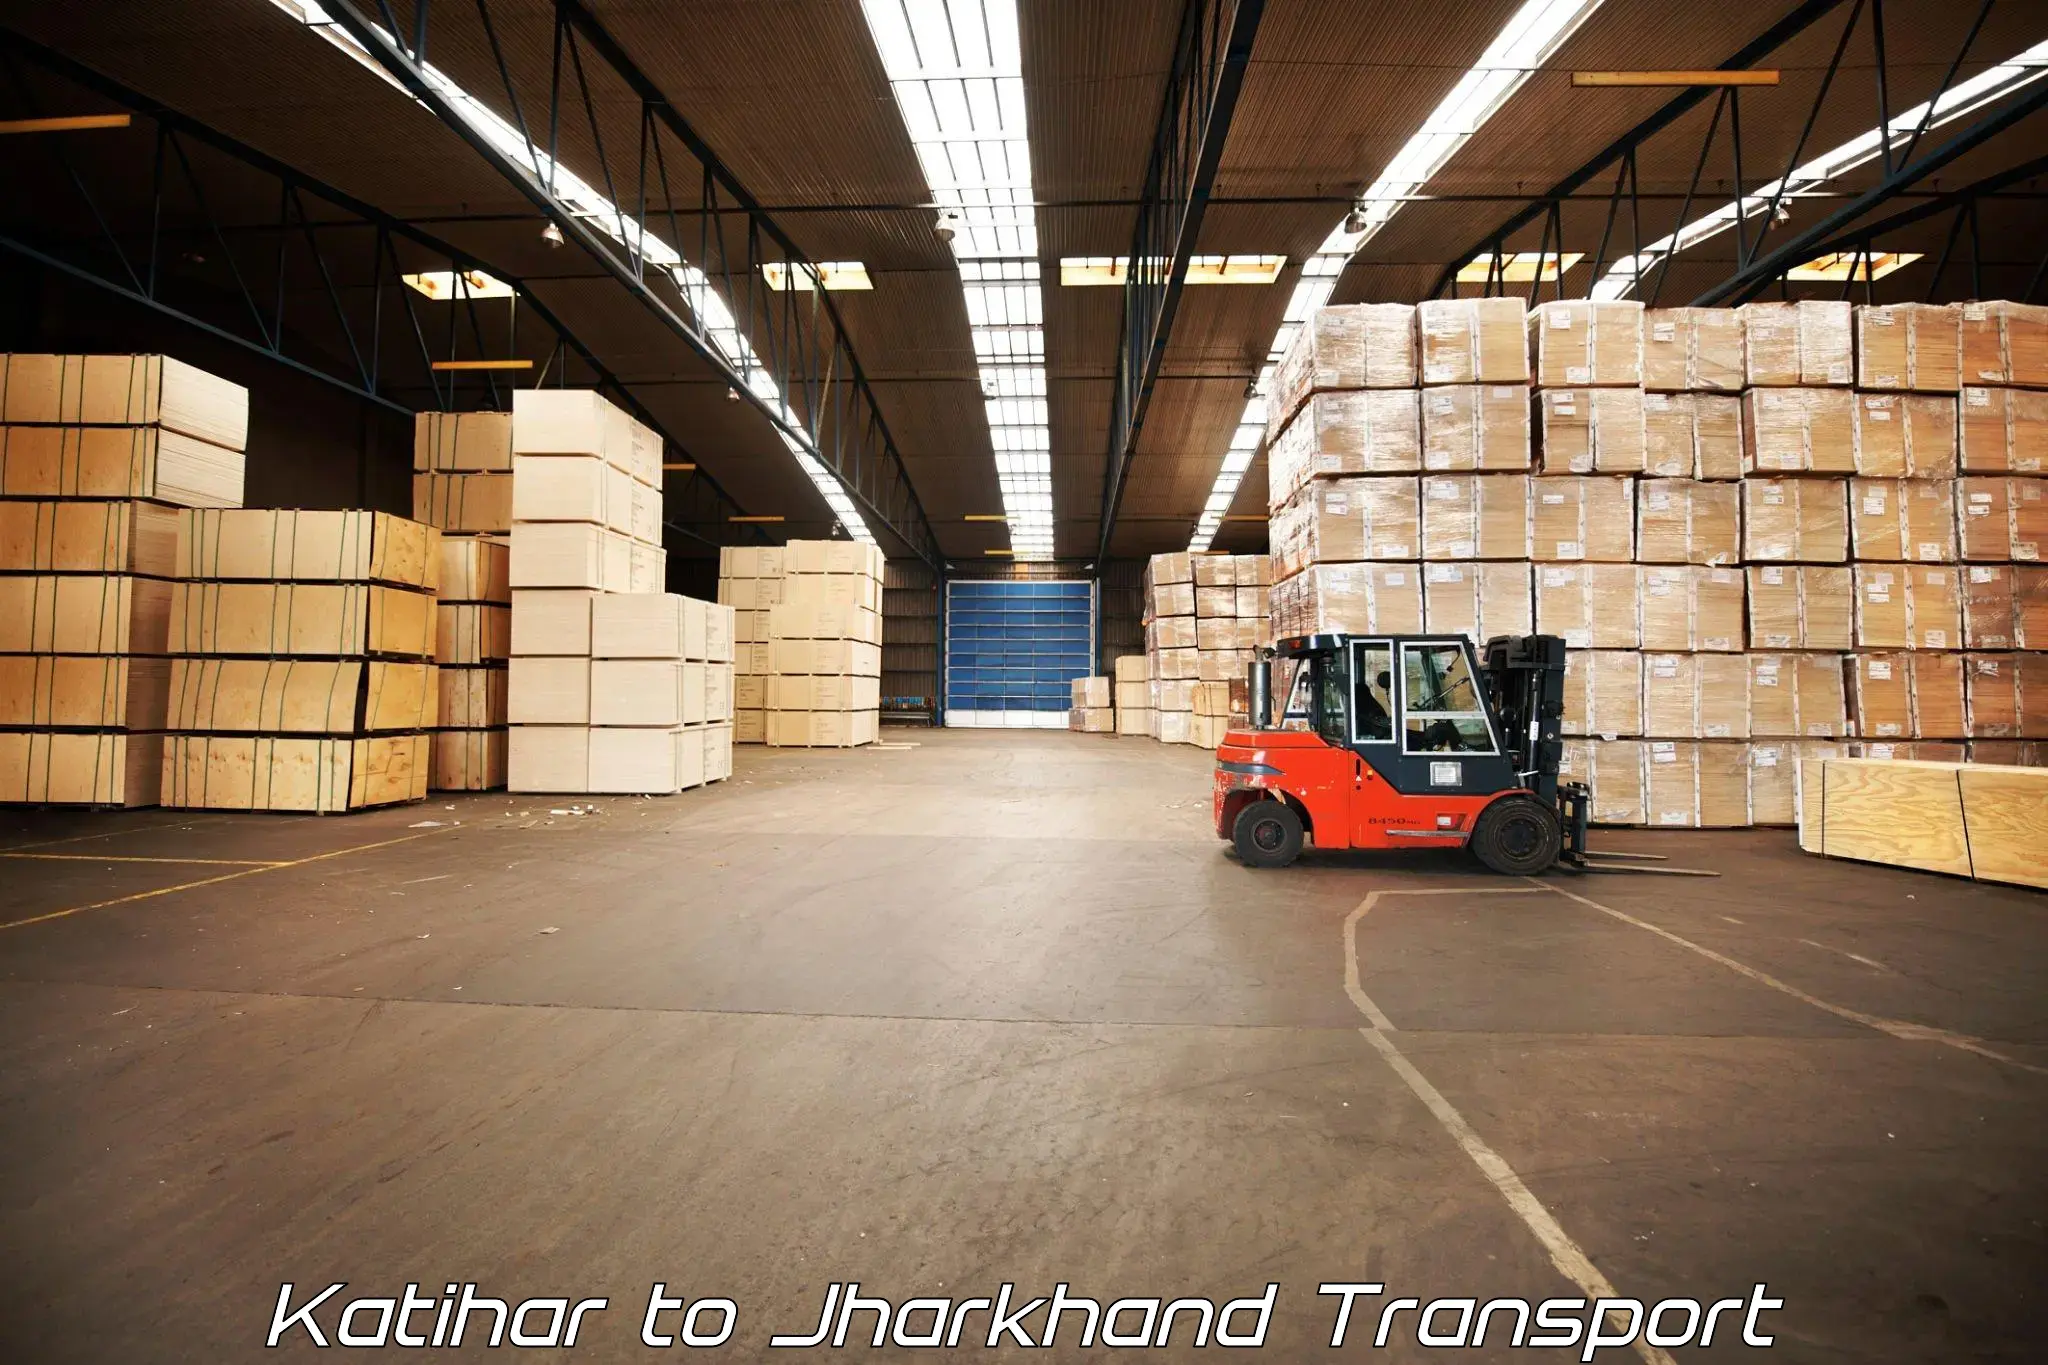 Cargo transport services Katihar to Medininagar